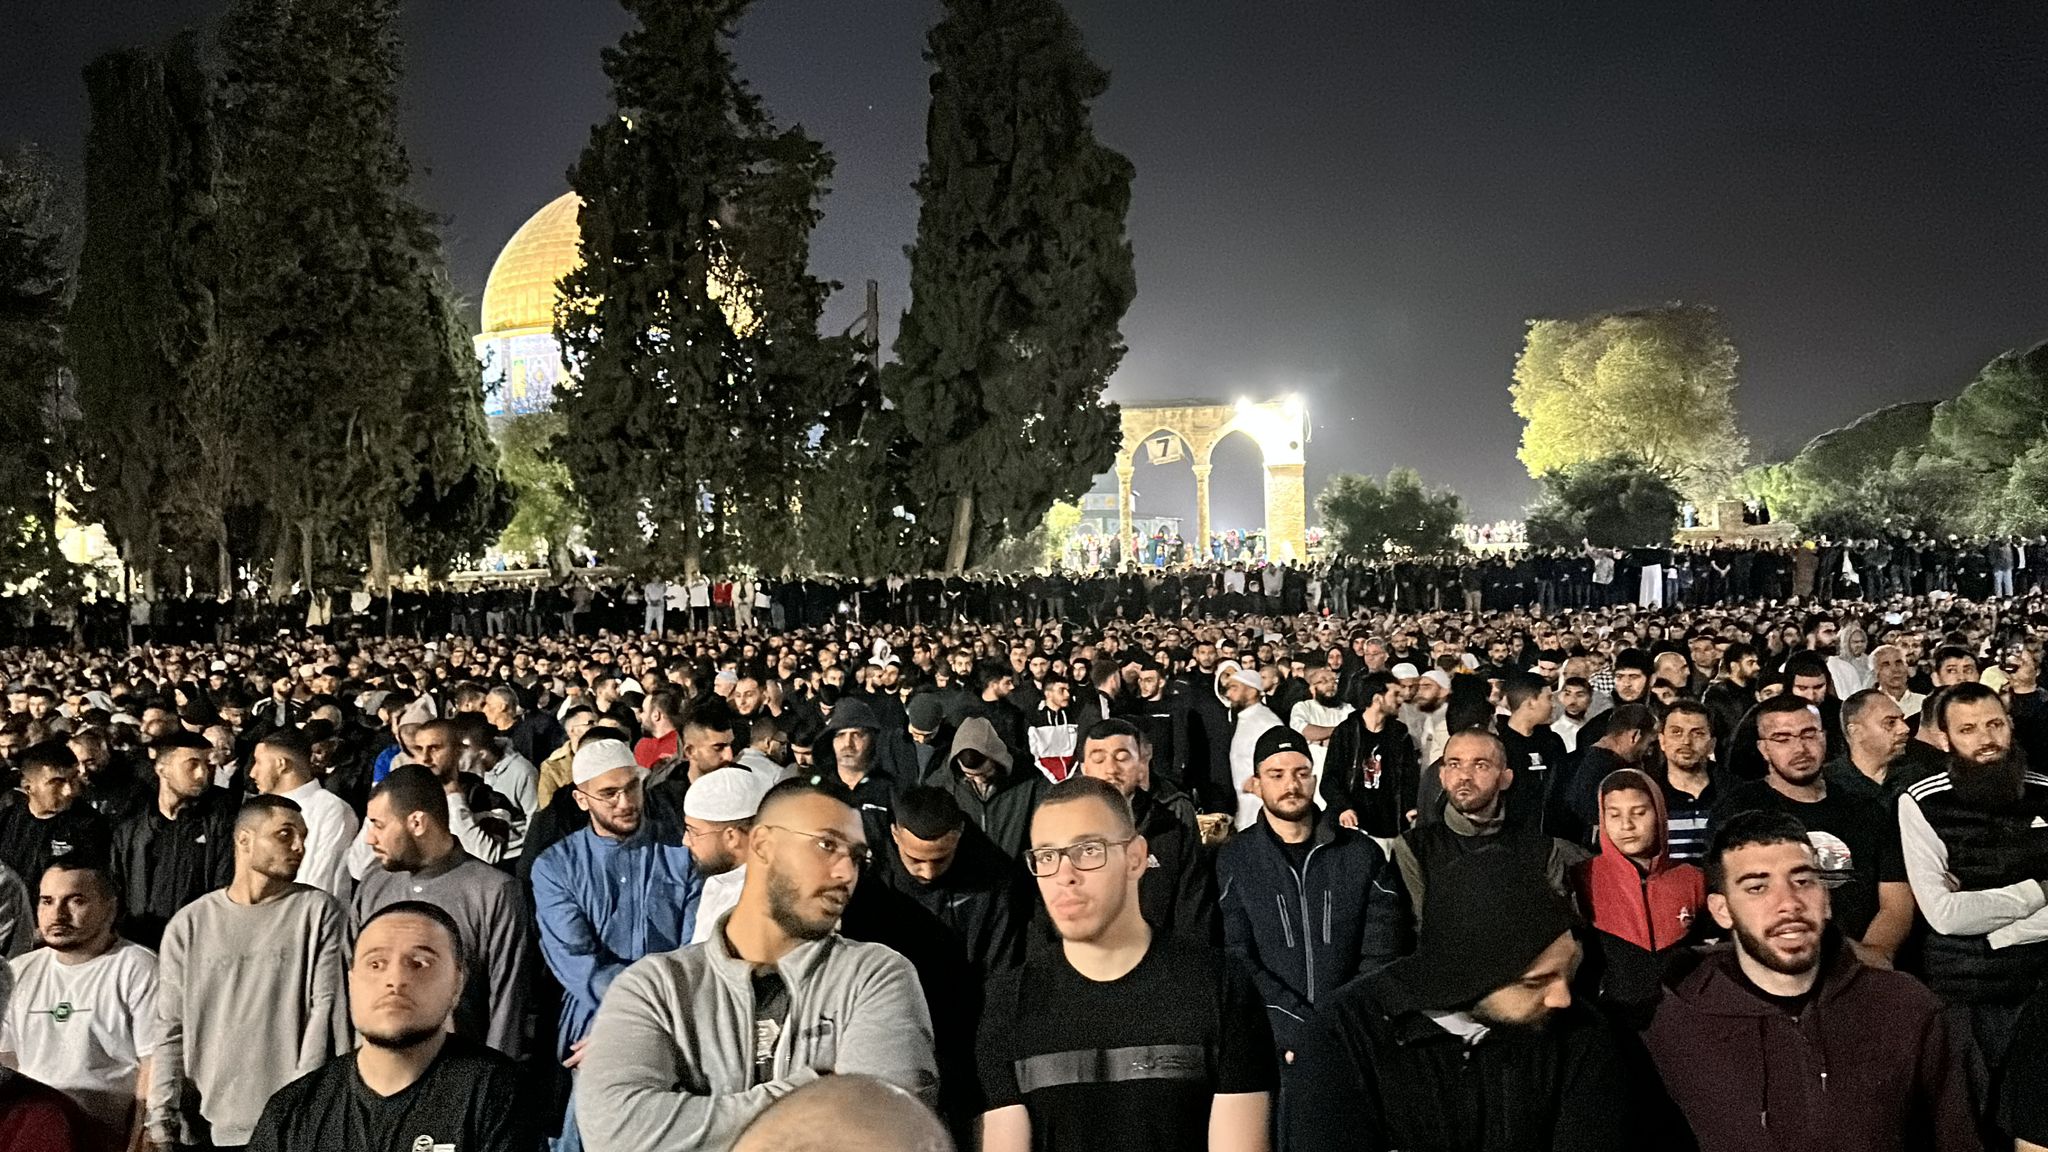 200 ألف يصلّون العشاء والتراويح في المسجد الأقصى